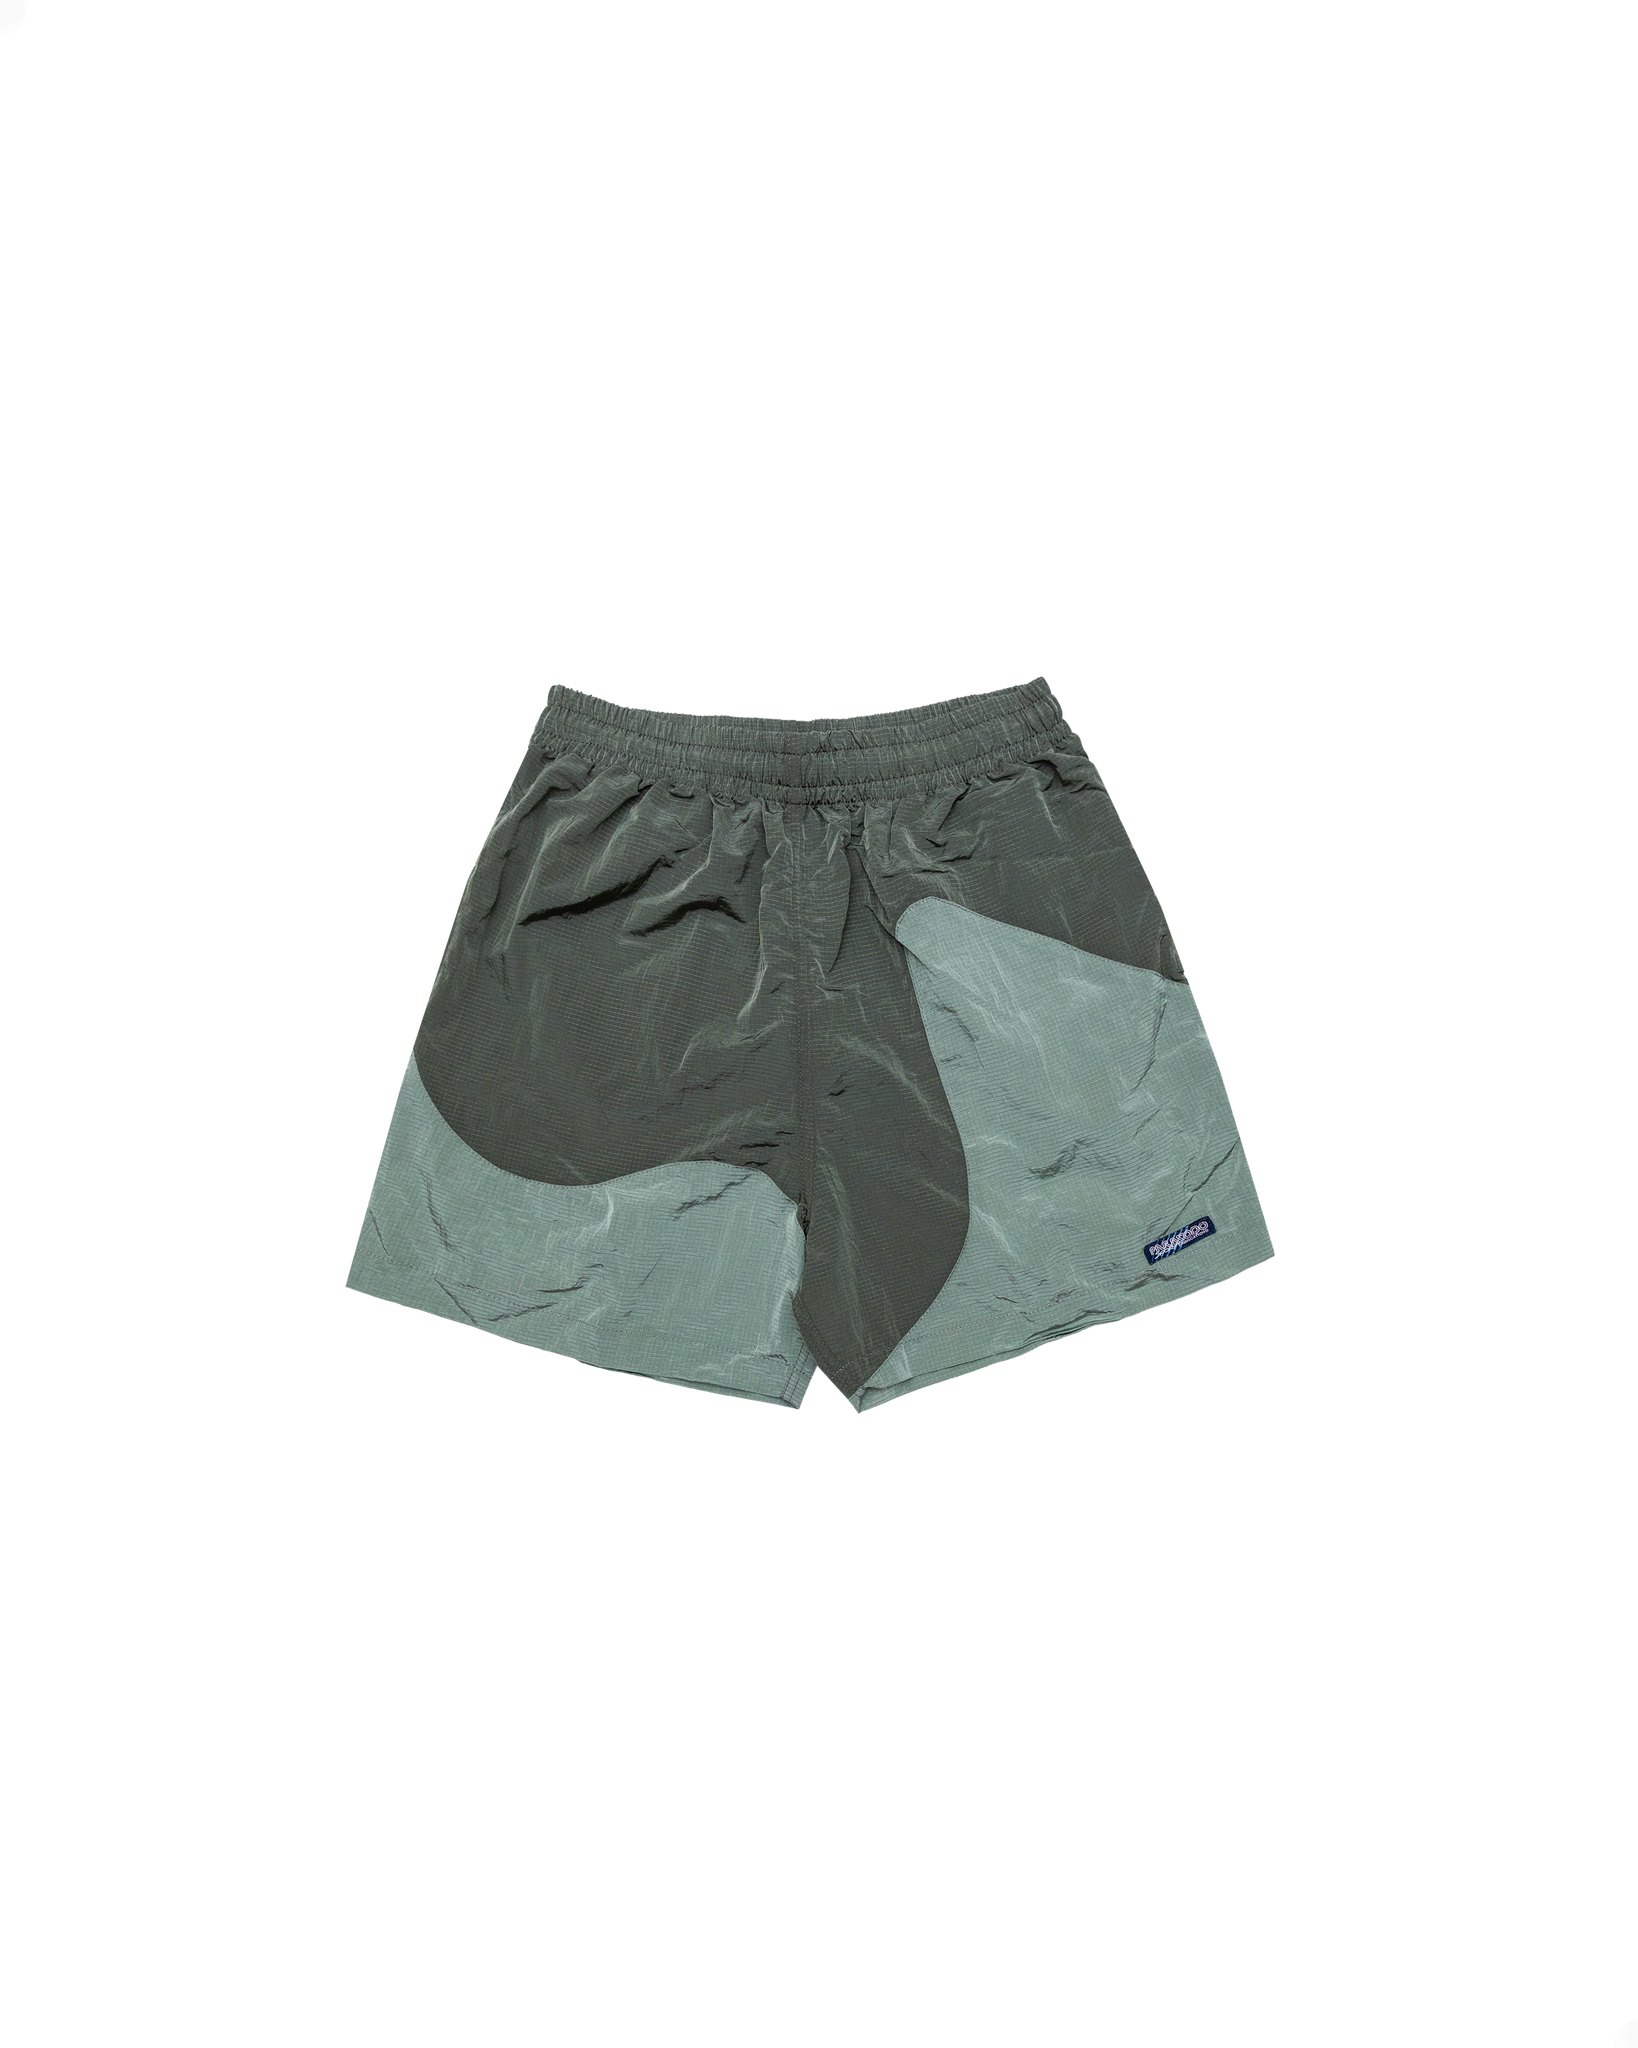 Onda Shorts: Trench Green/Sage